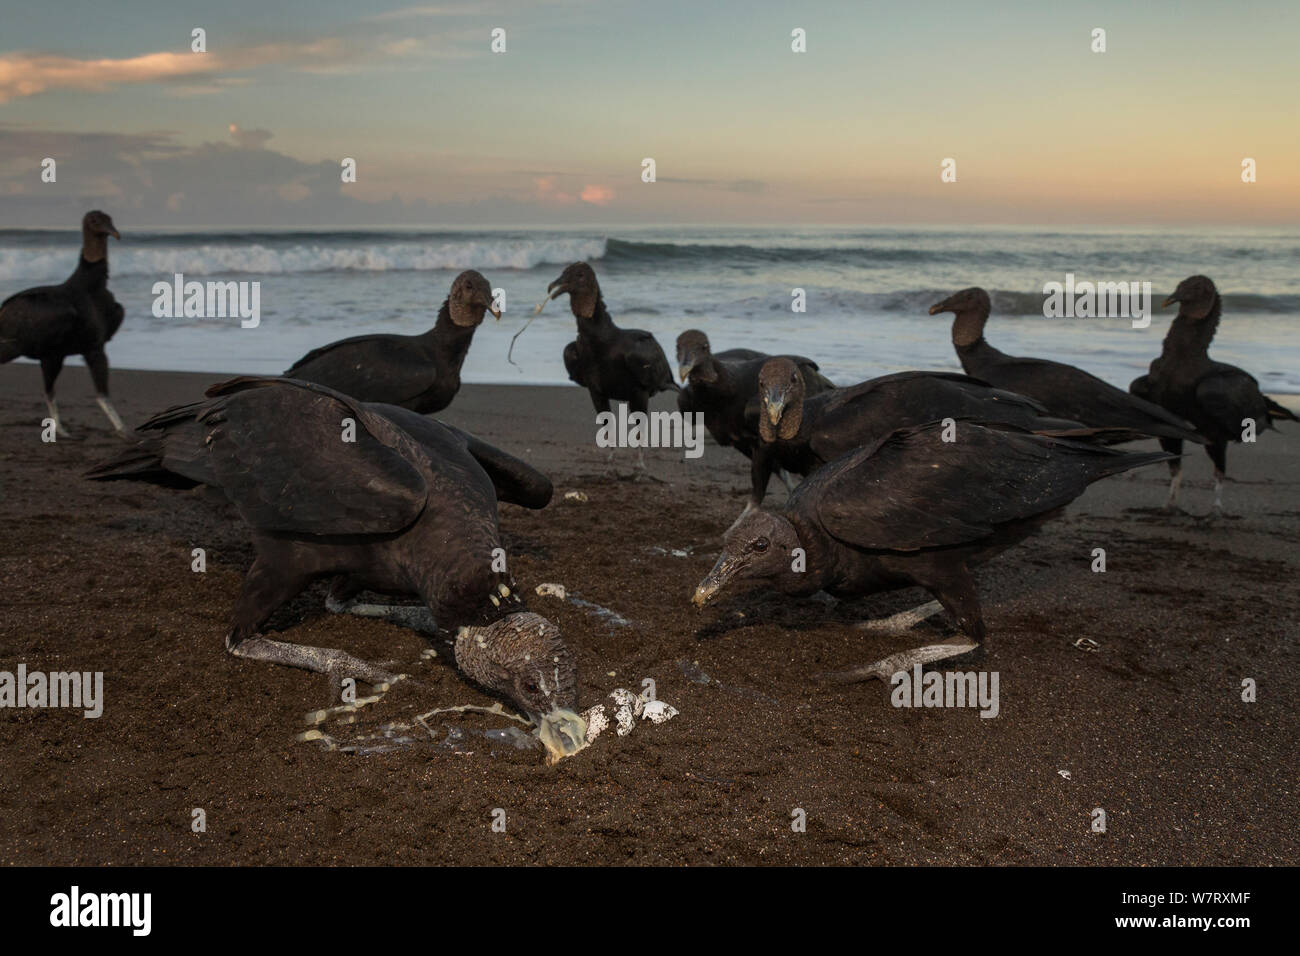 Les vautours noirs (Coragyps atratus) se nourrissent d'œufs de tortues olivâtres (Lepidochelys olivacea) lavés gratuitement à partir de la plage de surf, la côte du Pacifique, Playa Ostional, Costa Rica. Banque D'Images